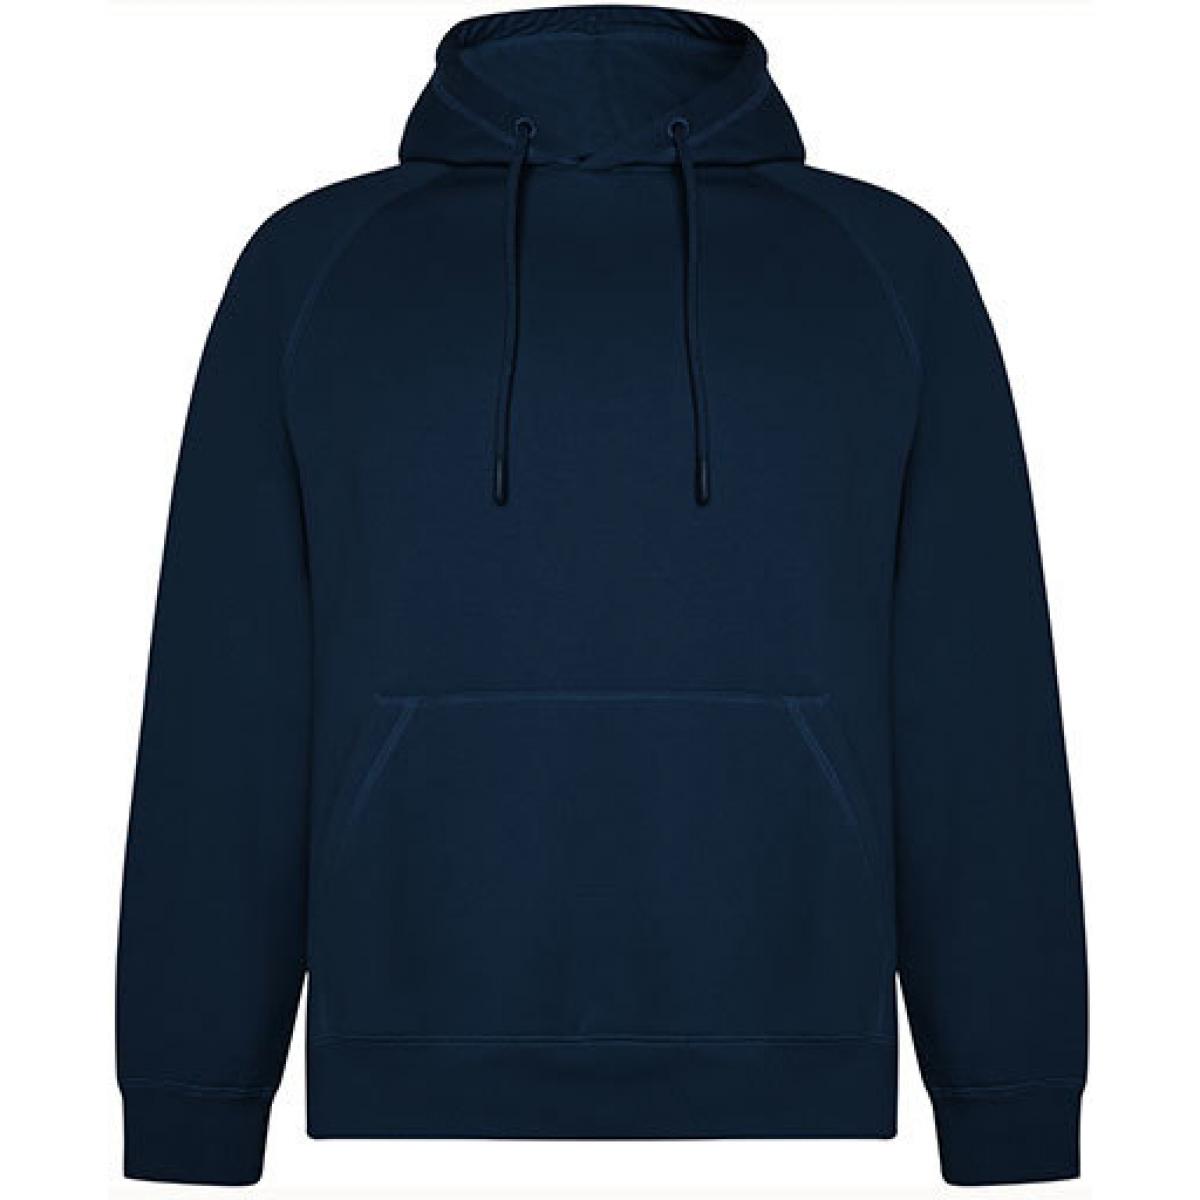 Hersteller: Roly Eco Herstellernummer: SU1074 Artikelbezeichnung: Vinson Organic Hooded Sweatshirt - Unisex Kapuzenpullover Farbe: Navy Blue 55